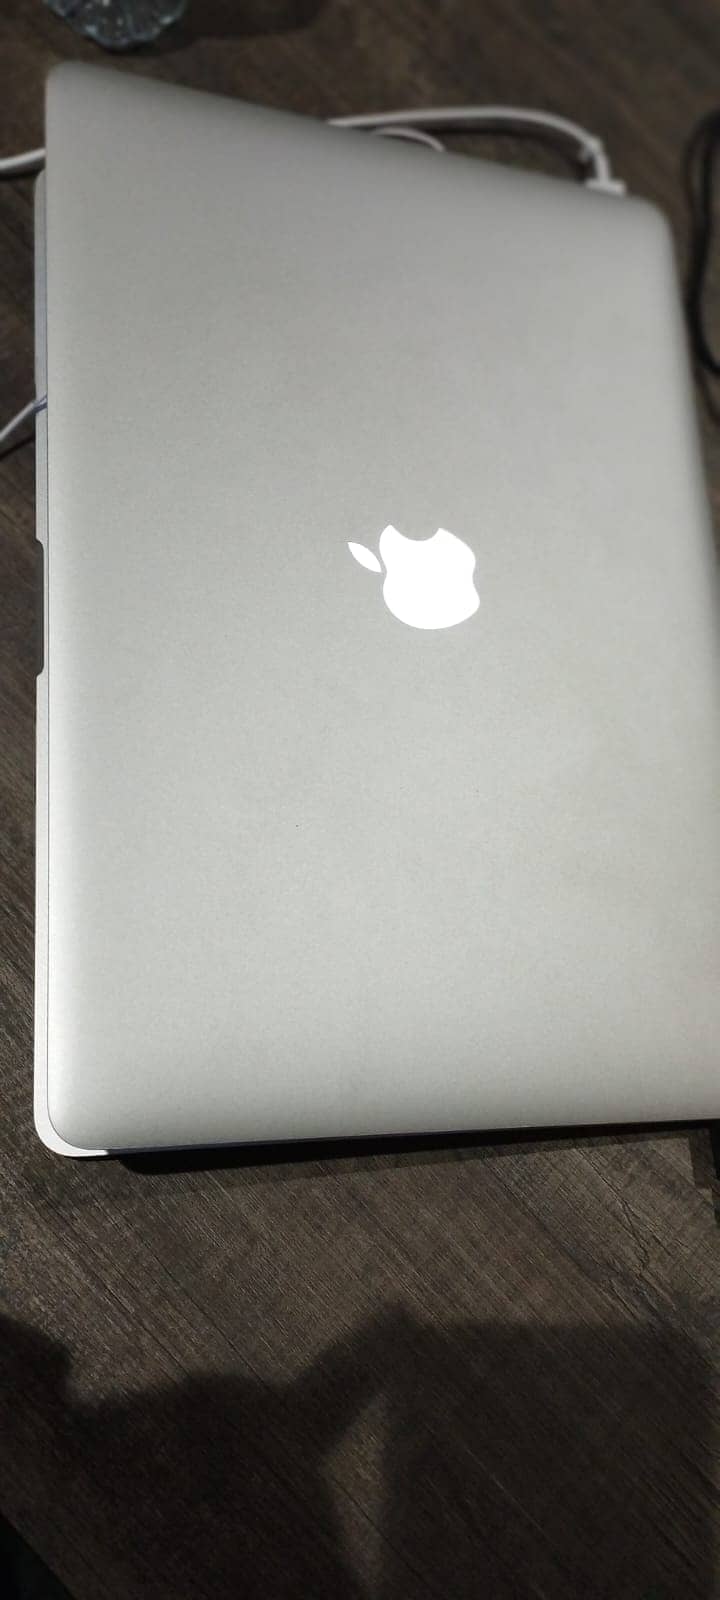 Apple Macbook Pro "Core i7" A1398 2.5 15" Mid-2015 16GB 2